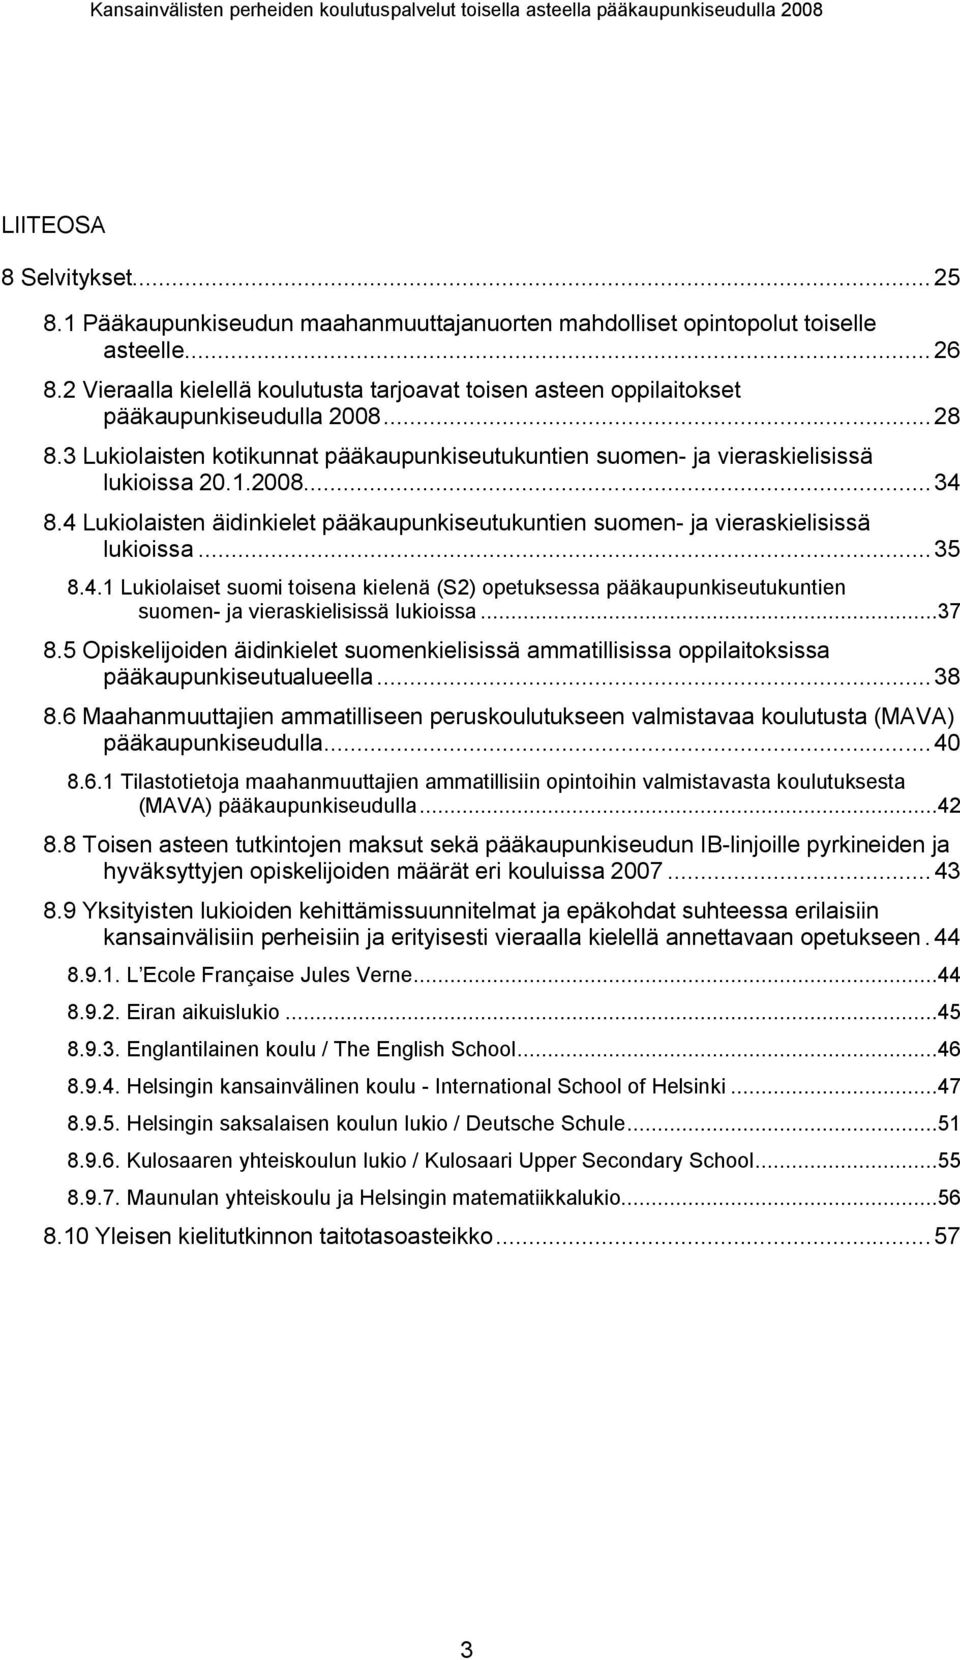 4 Lukiolaisten äidinkielet pääkaupunkiseutukuntien suomen- ja vieraskielisissä lukioissa...35 8.4.1 Lukiolaiset suomi toisena kielenä (S2) opetuksessa pääkaupunkiseutukuntien suomen- ja vieraskielisissä lukioissa.